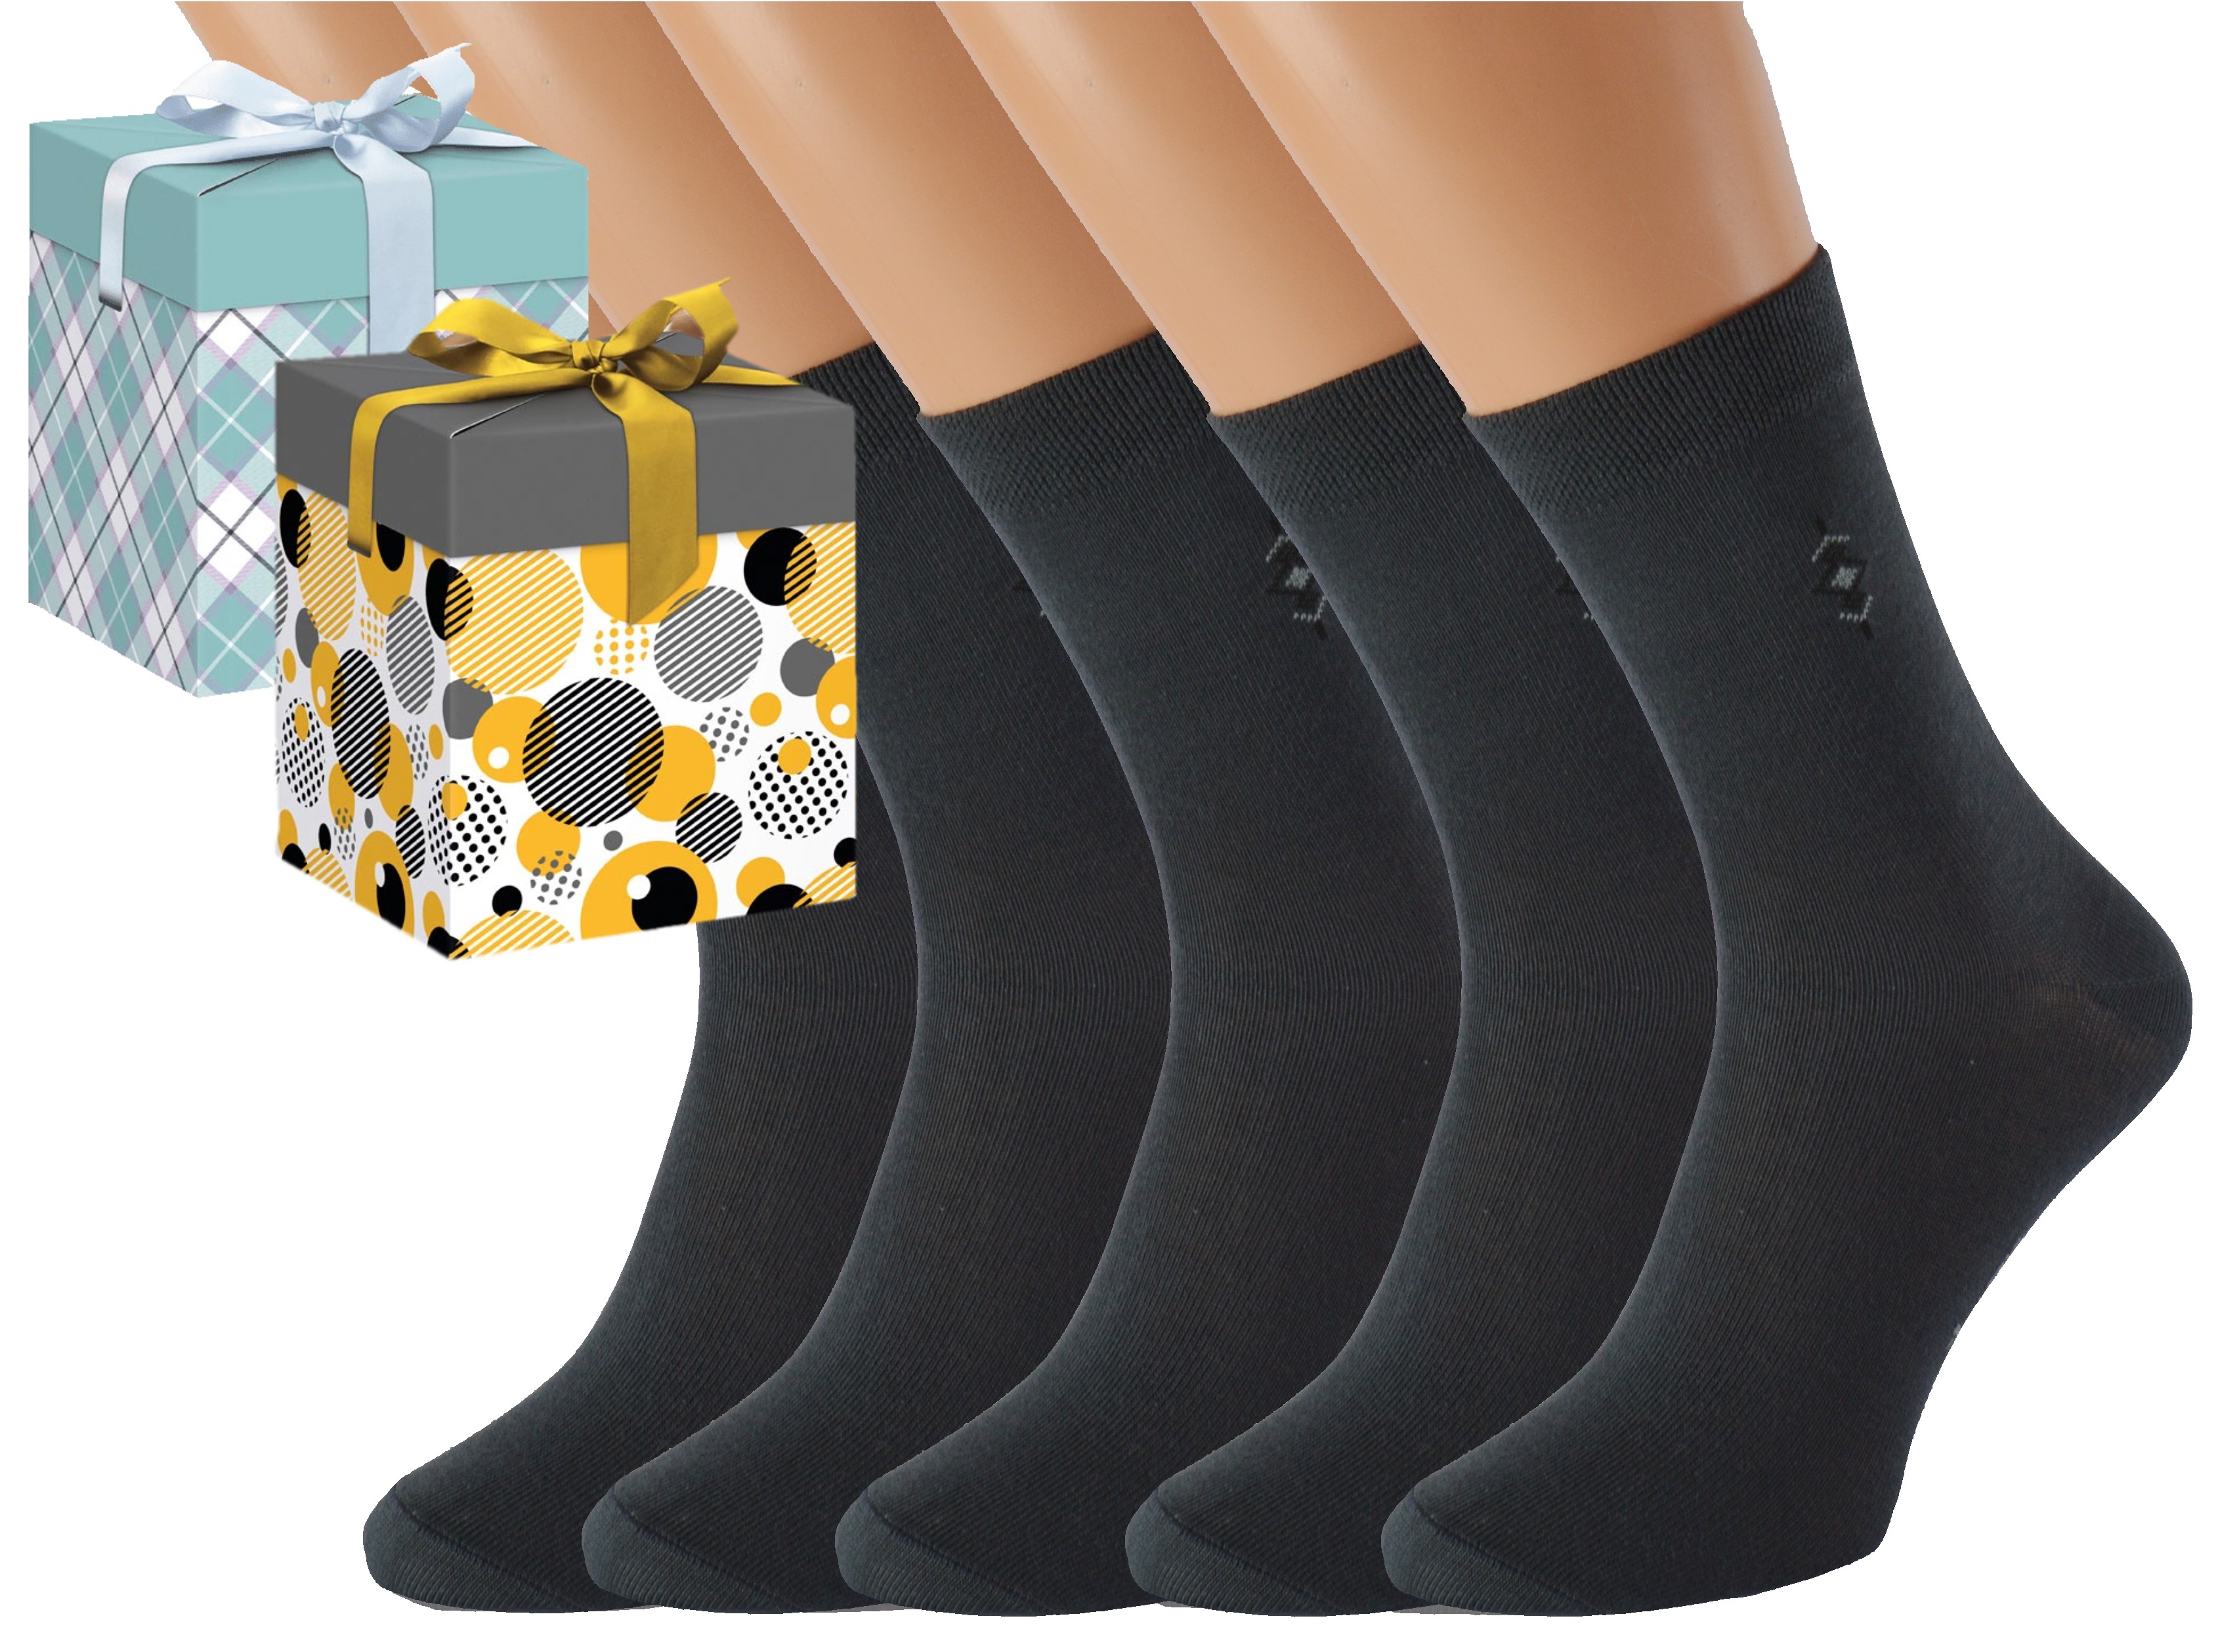 Dárkové balení 5 párů společenských ponožek BOBOLYC Barva: Tmavě šedé, Velikost: EUR 35-38 (UK 3-5), Zvolte variantu dárkového balení: Modrá s oky